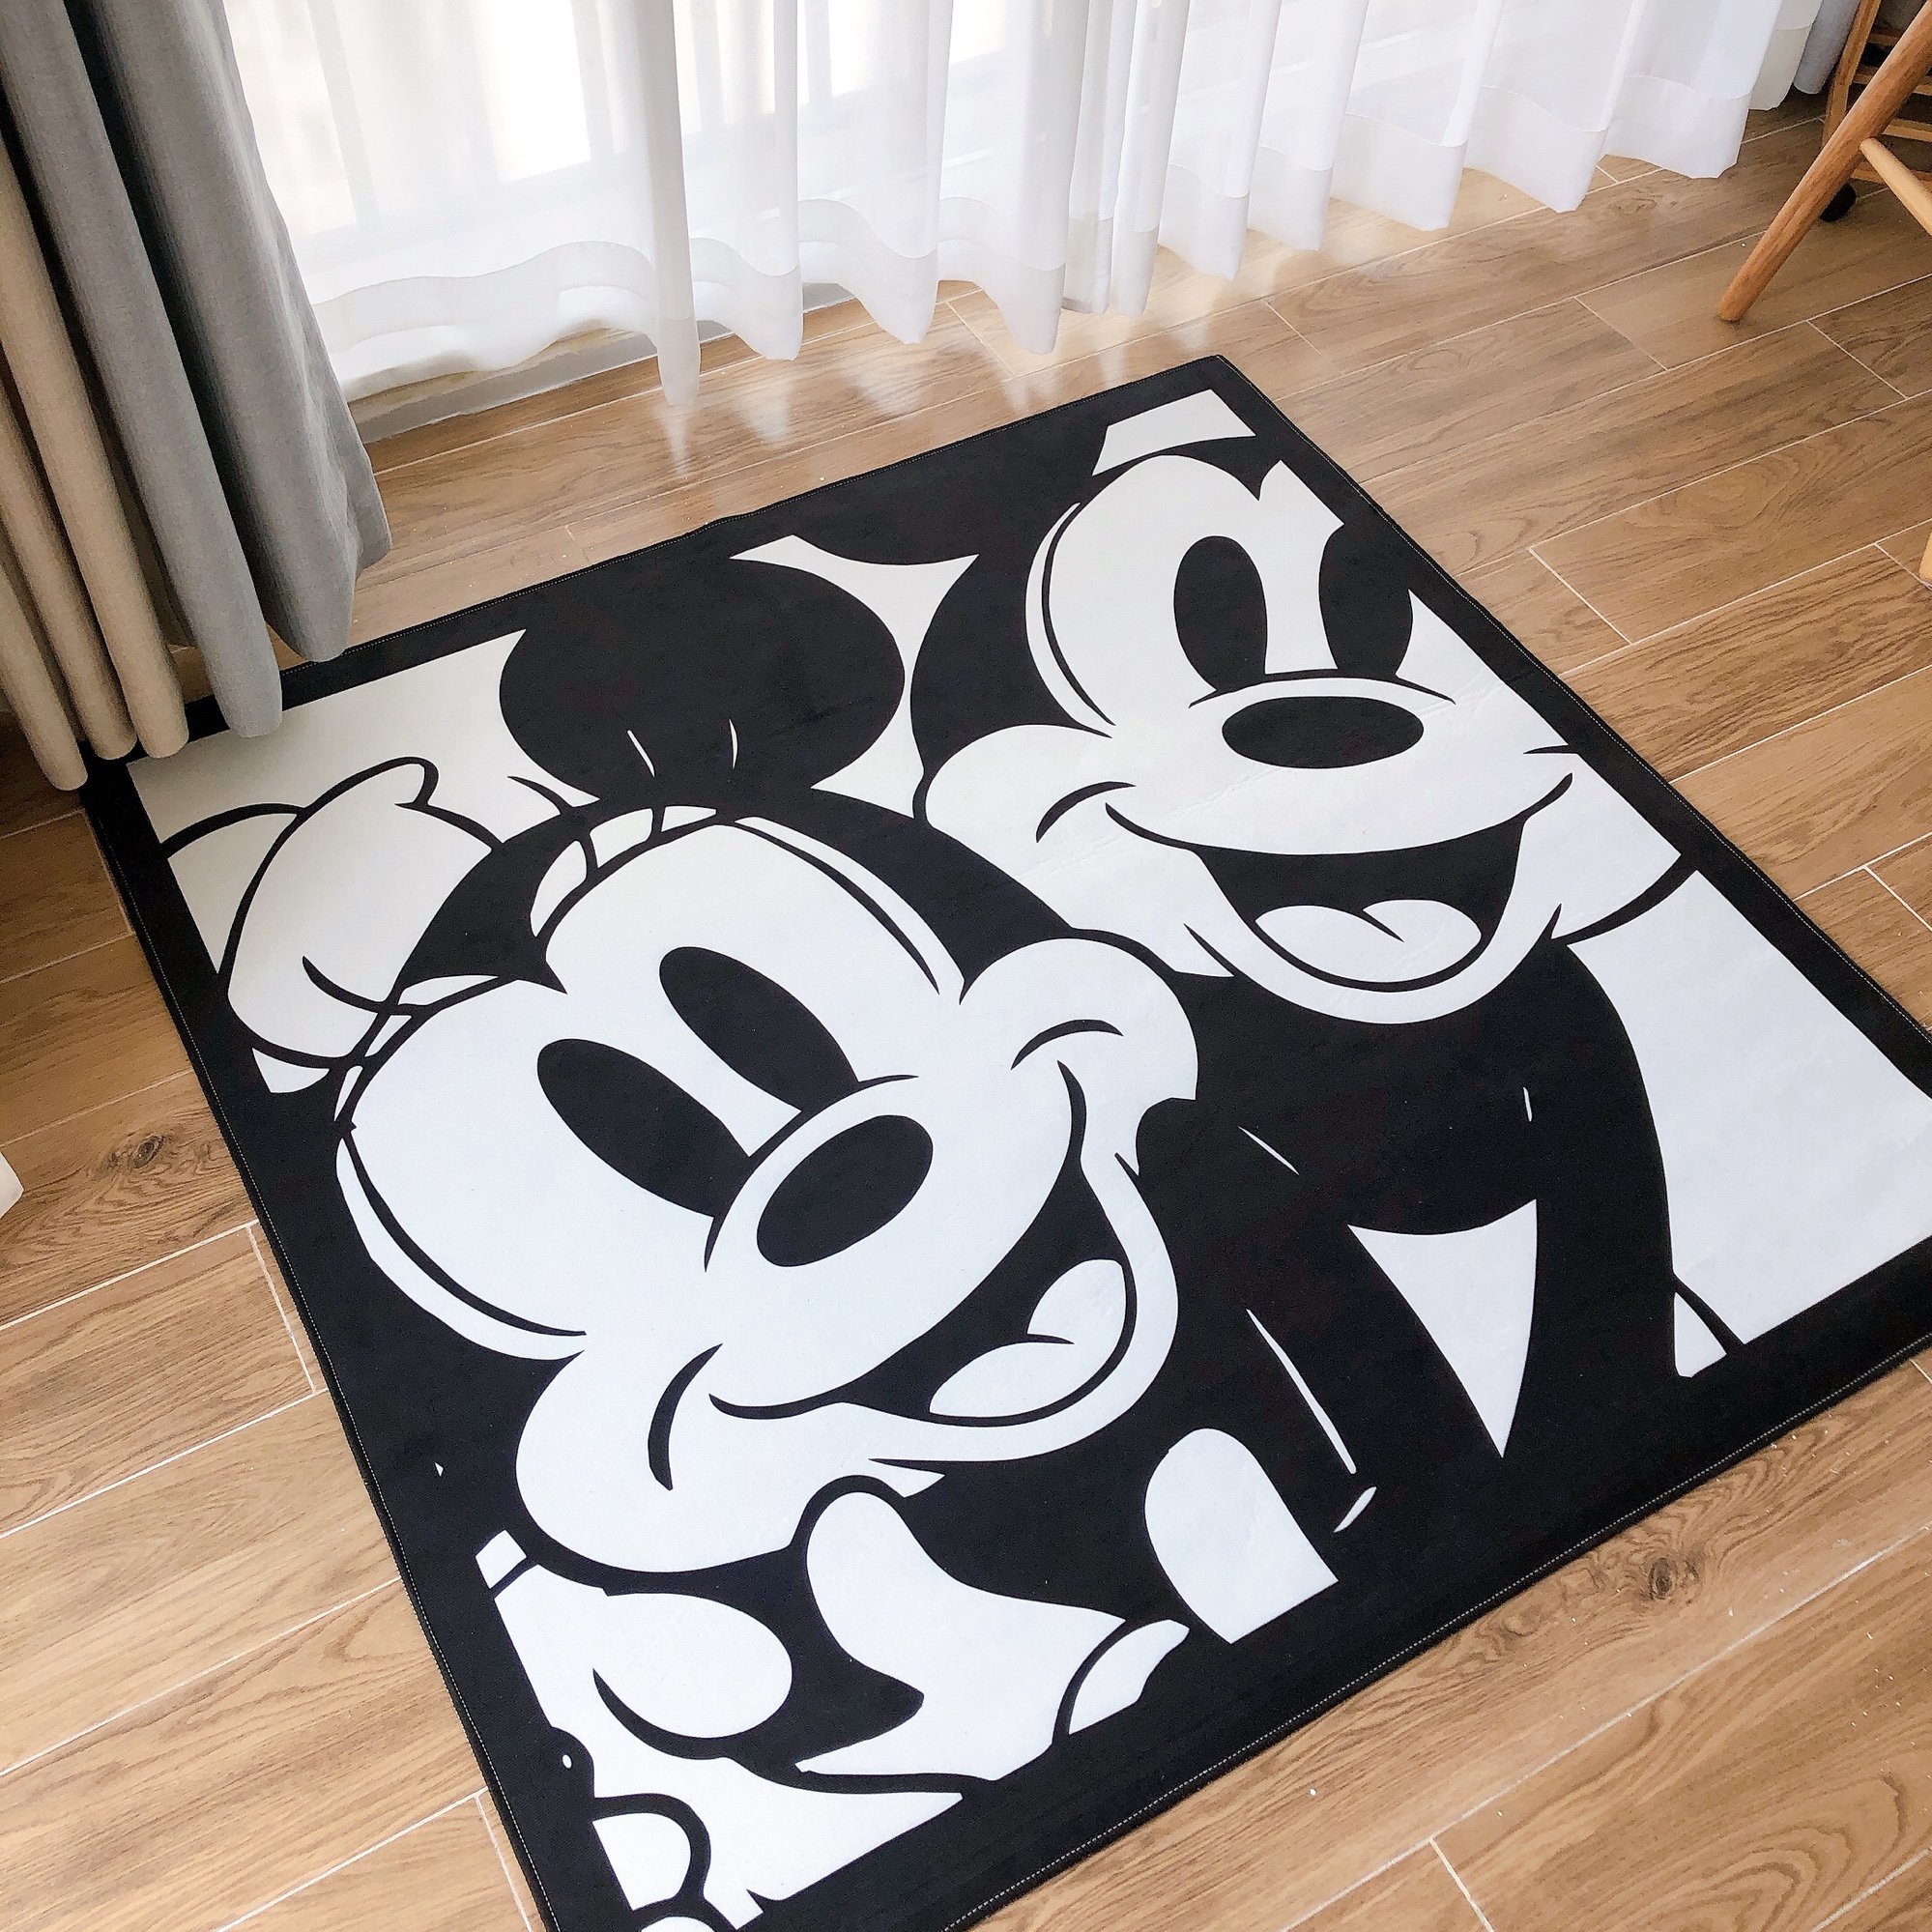 米奇米妮复古地毯黑白卡通电影纪念款 客厅卧室衣帽间正方形地毯垫